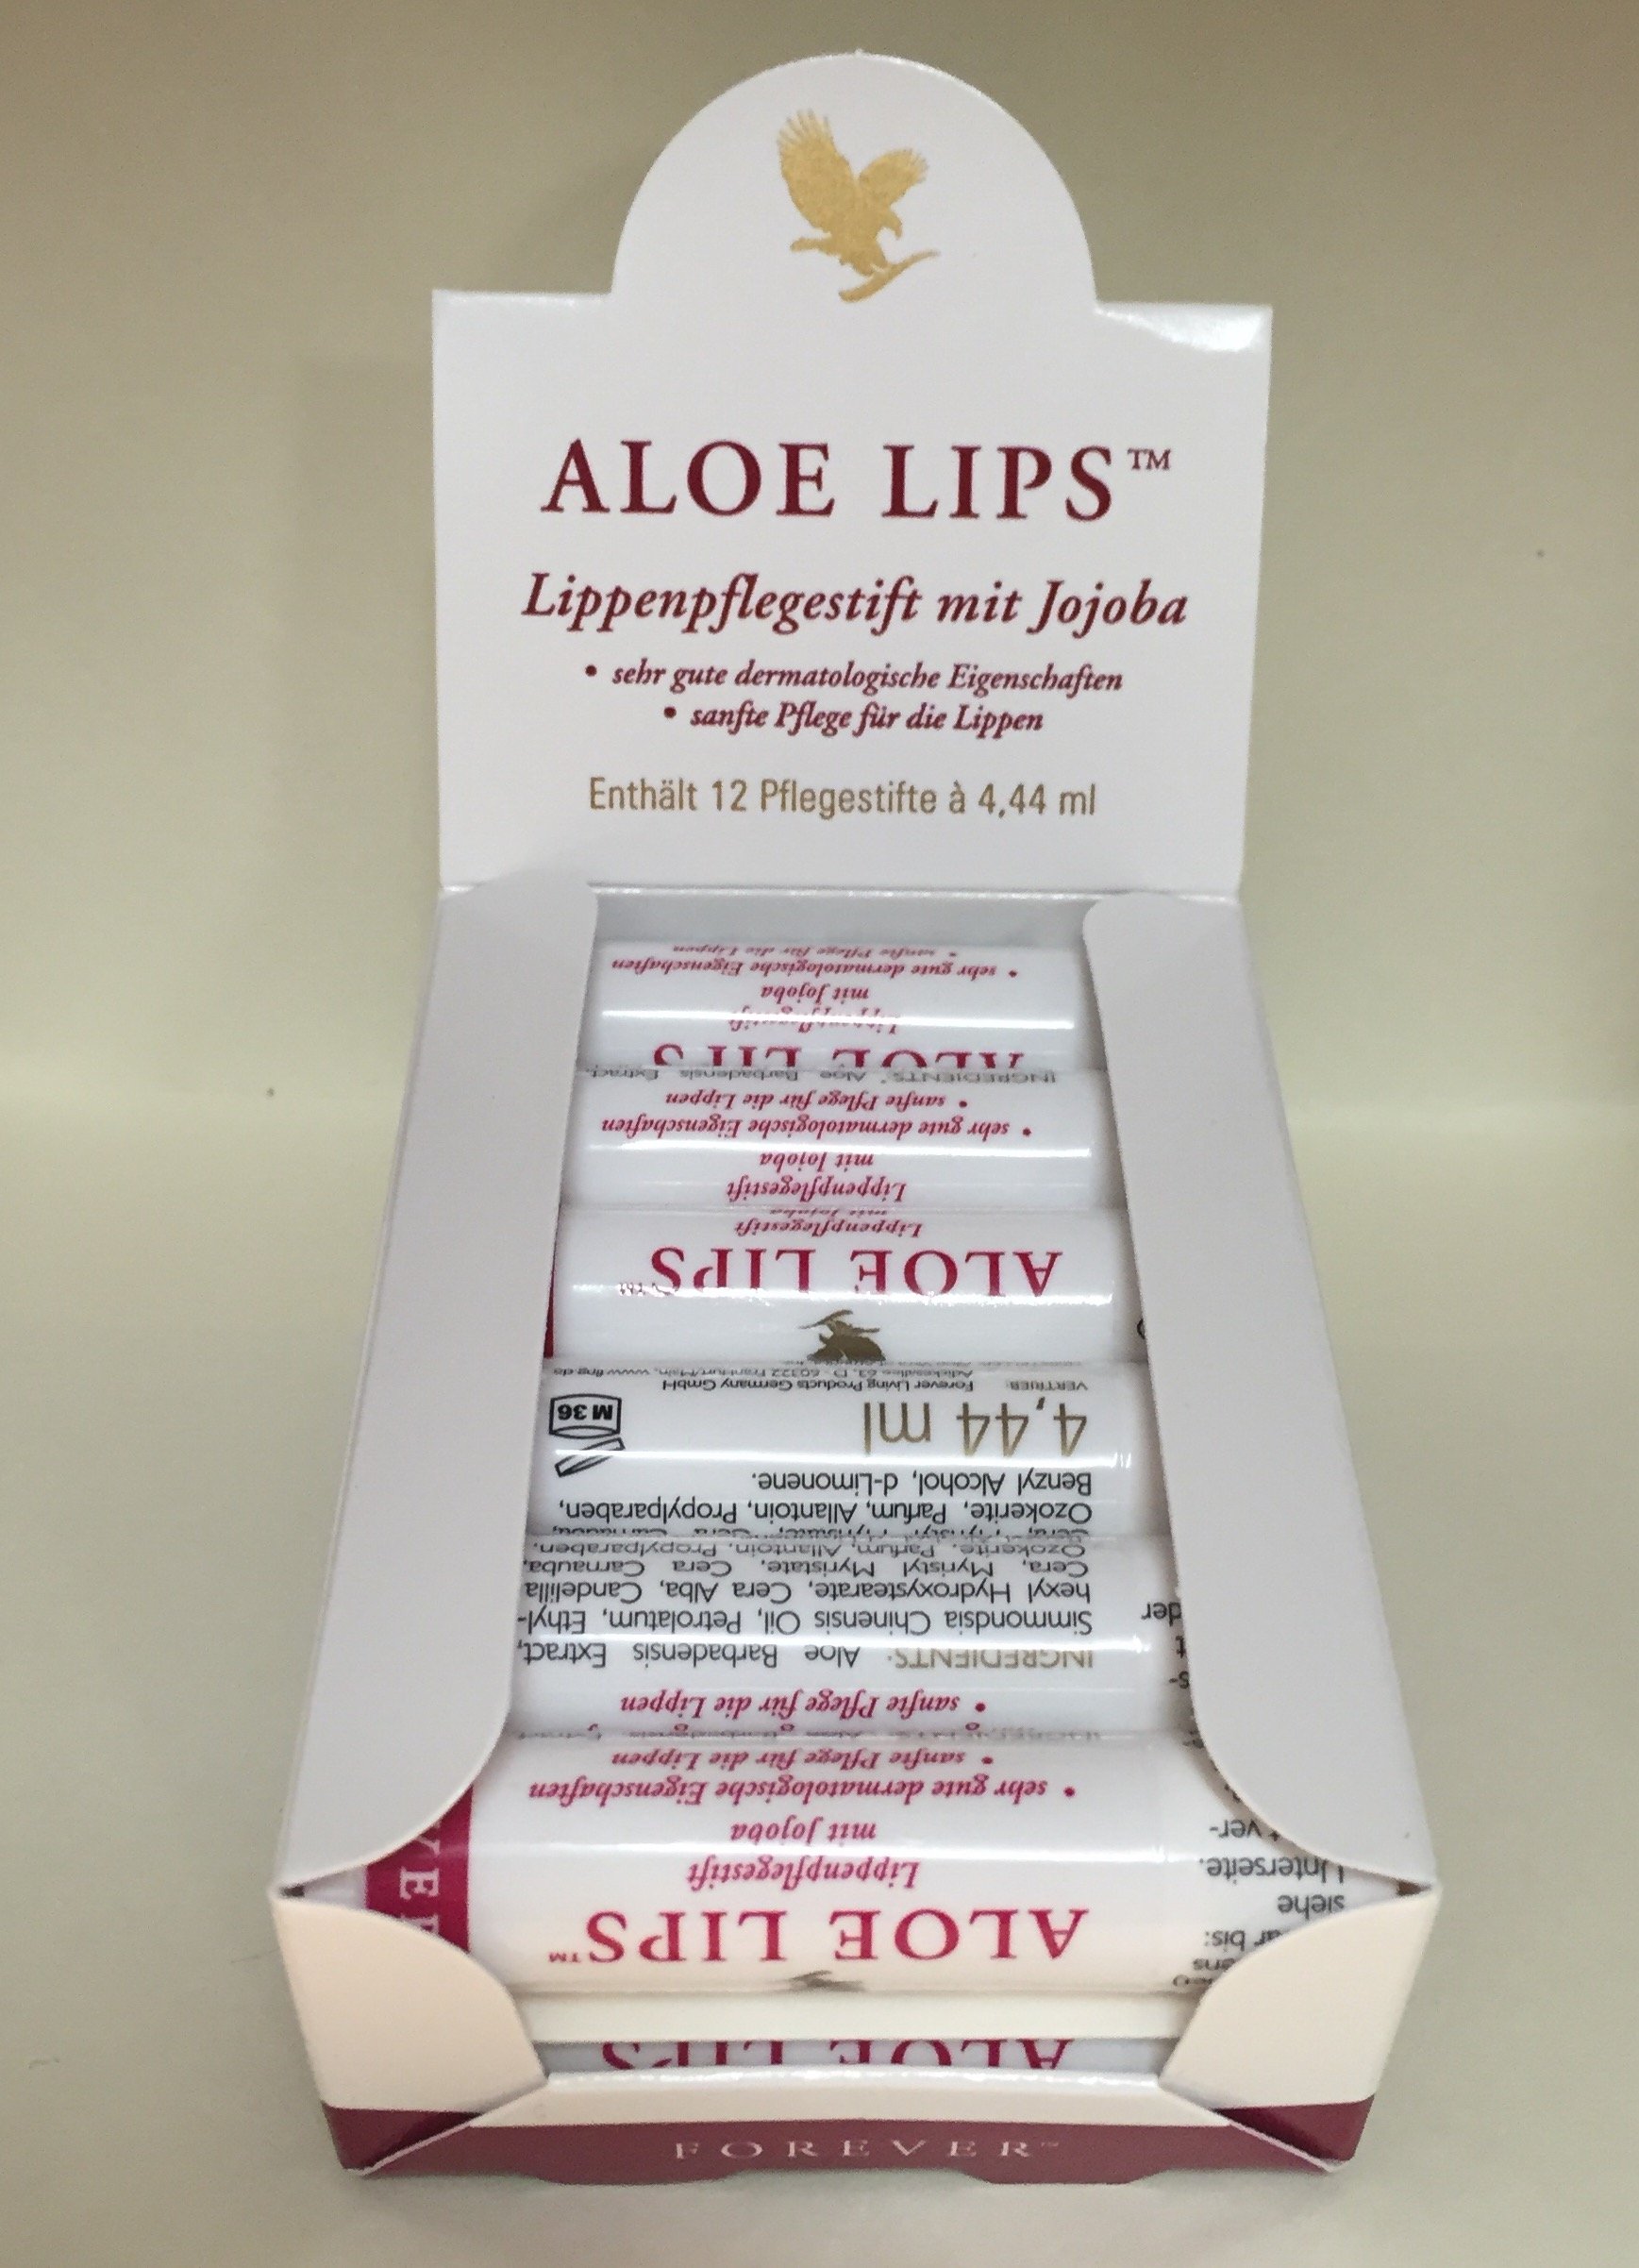 12 Aloe Vera Lips - Lippenpflegestift - Forever Living FLP -Original